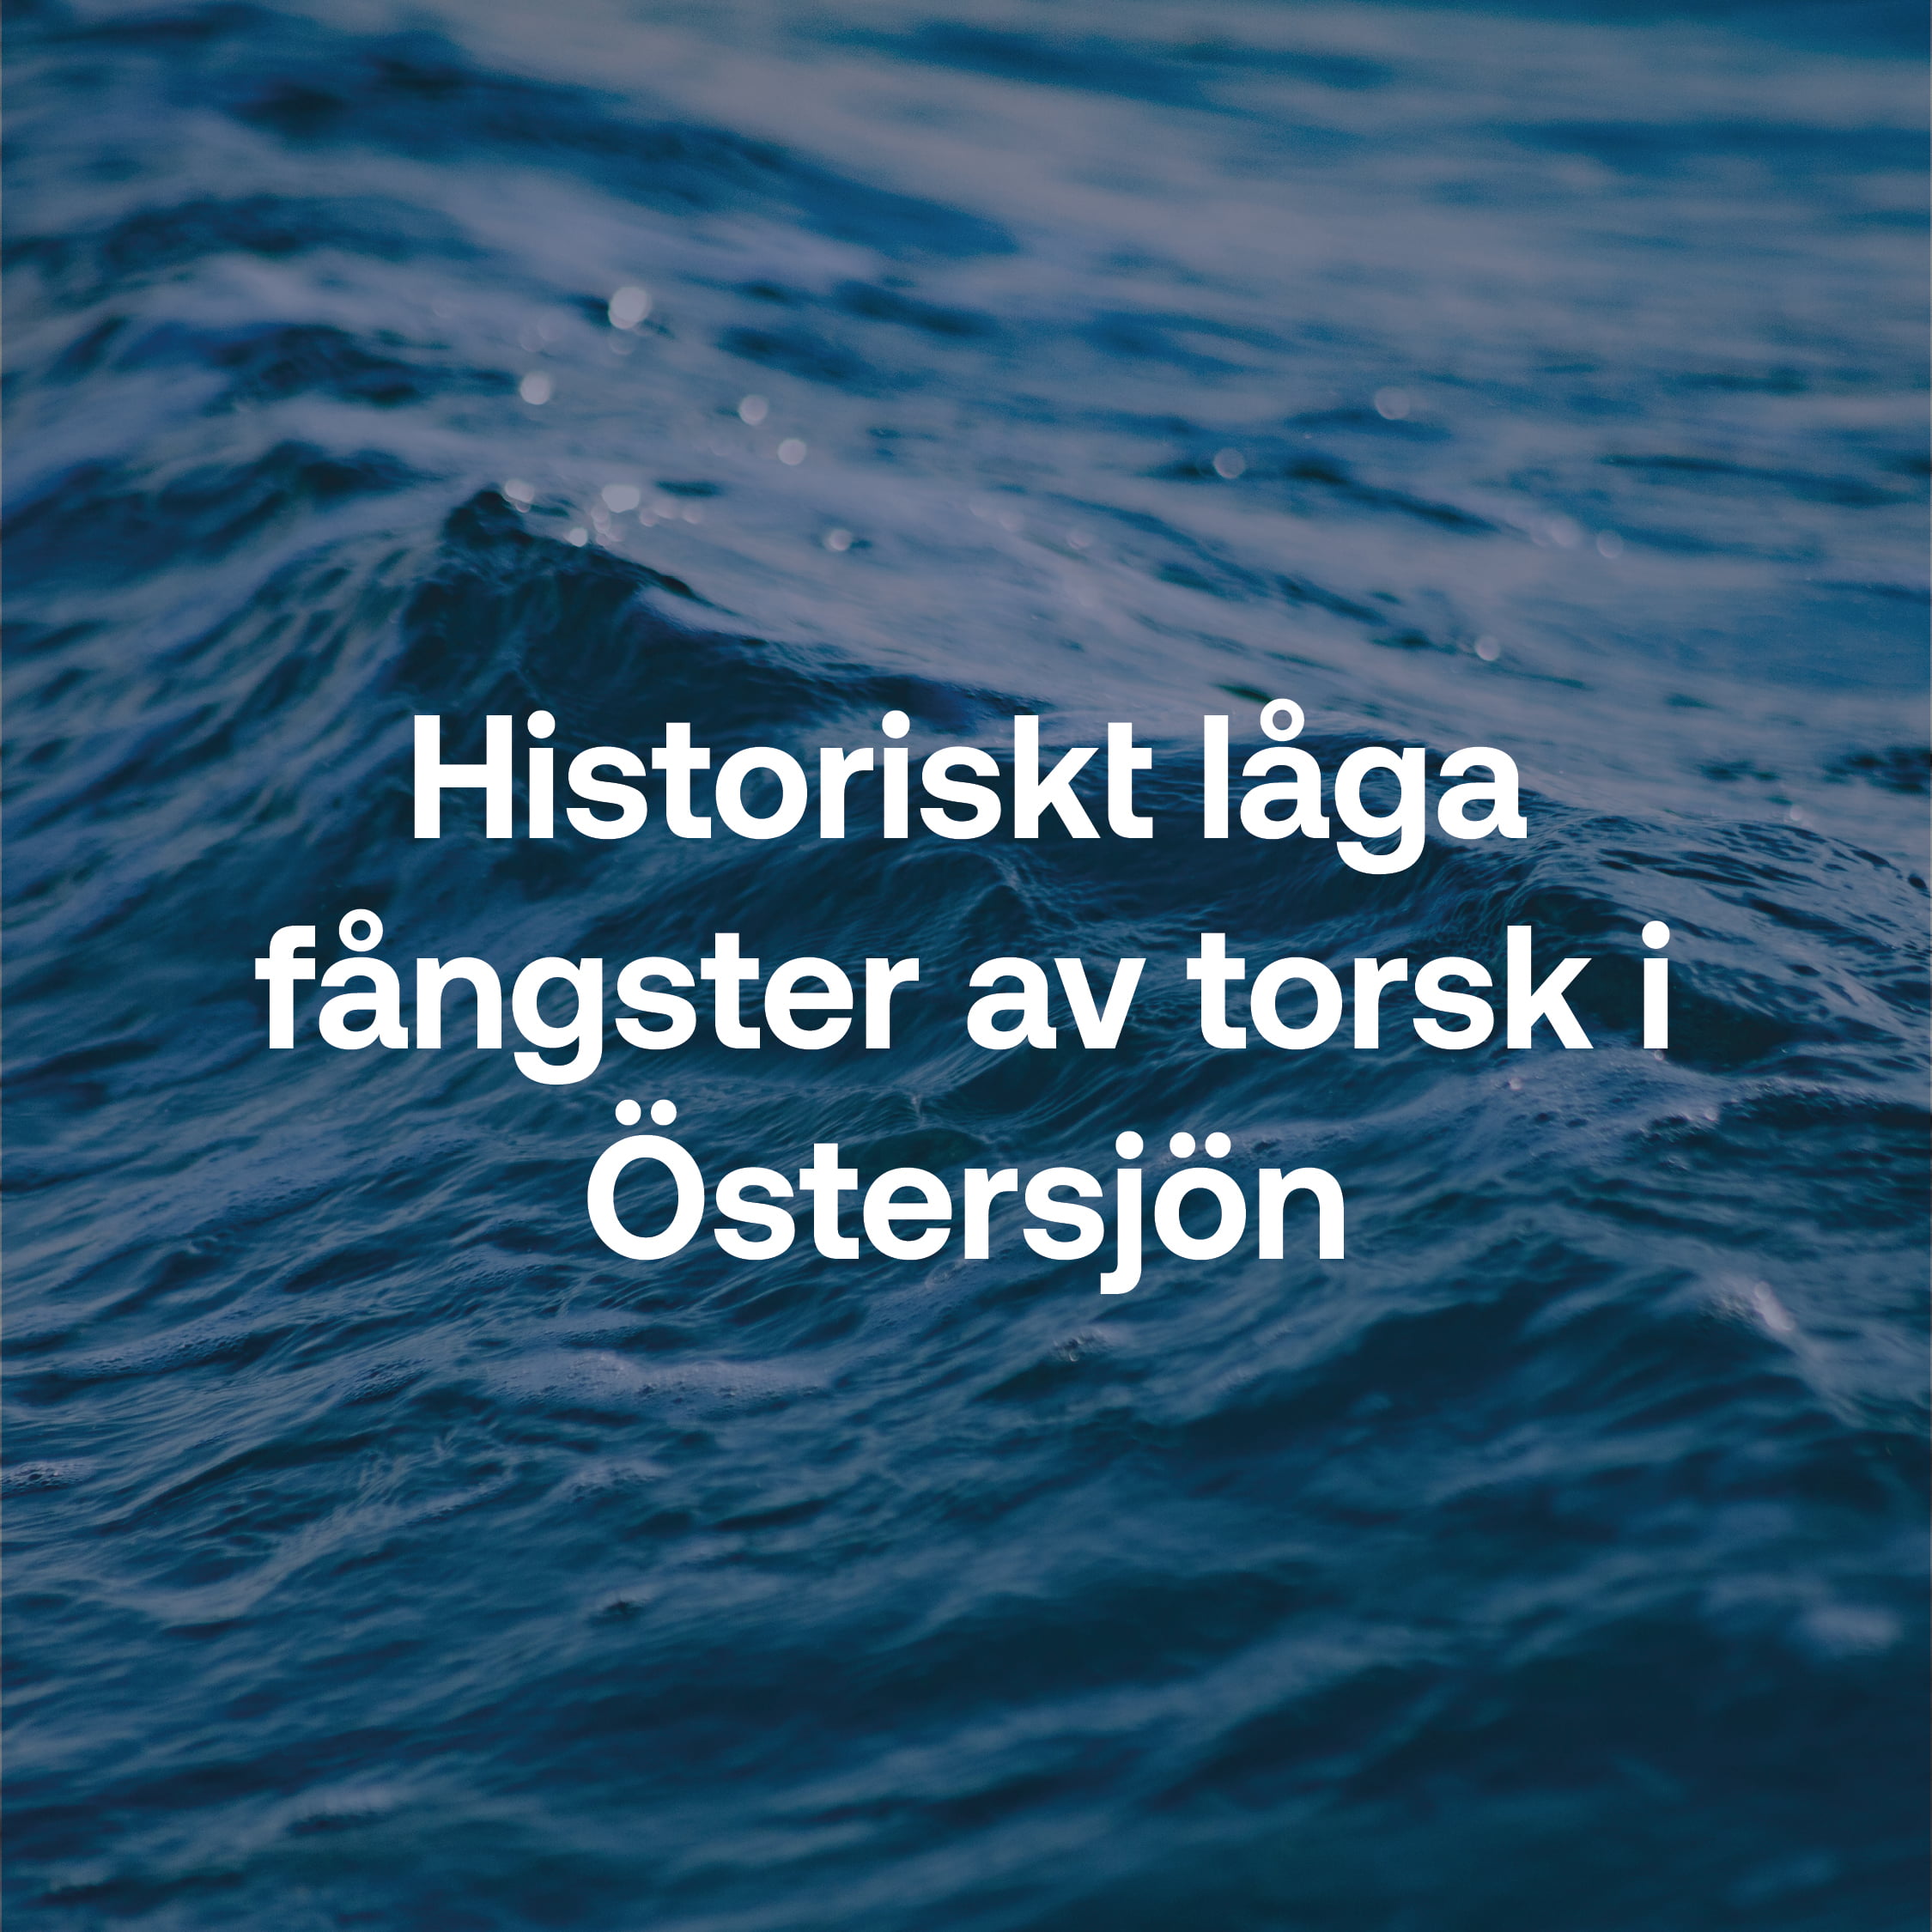 Historiskt låga fångster av torsk i Östersjön.